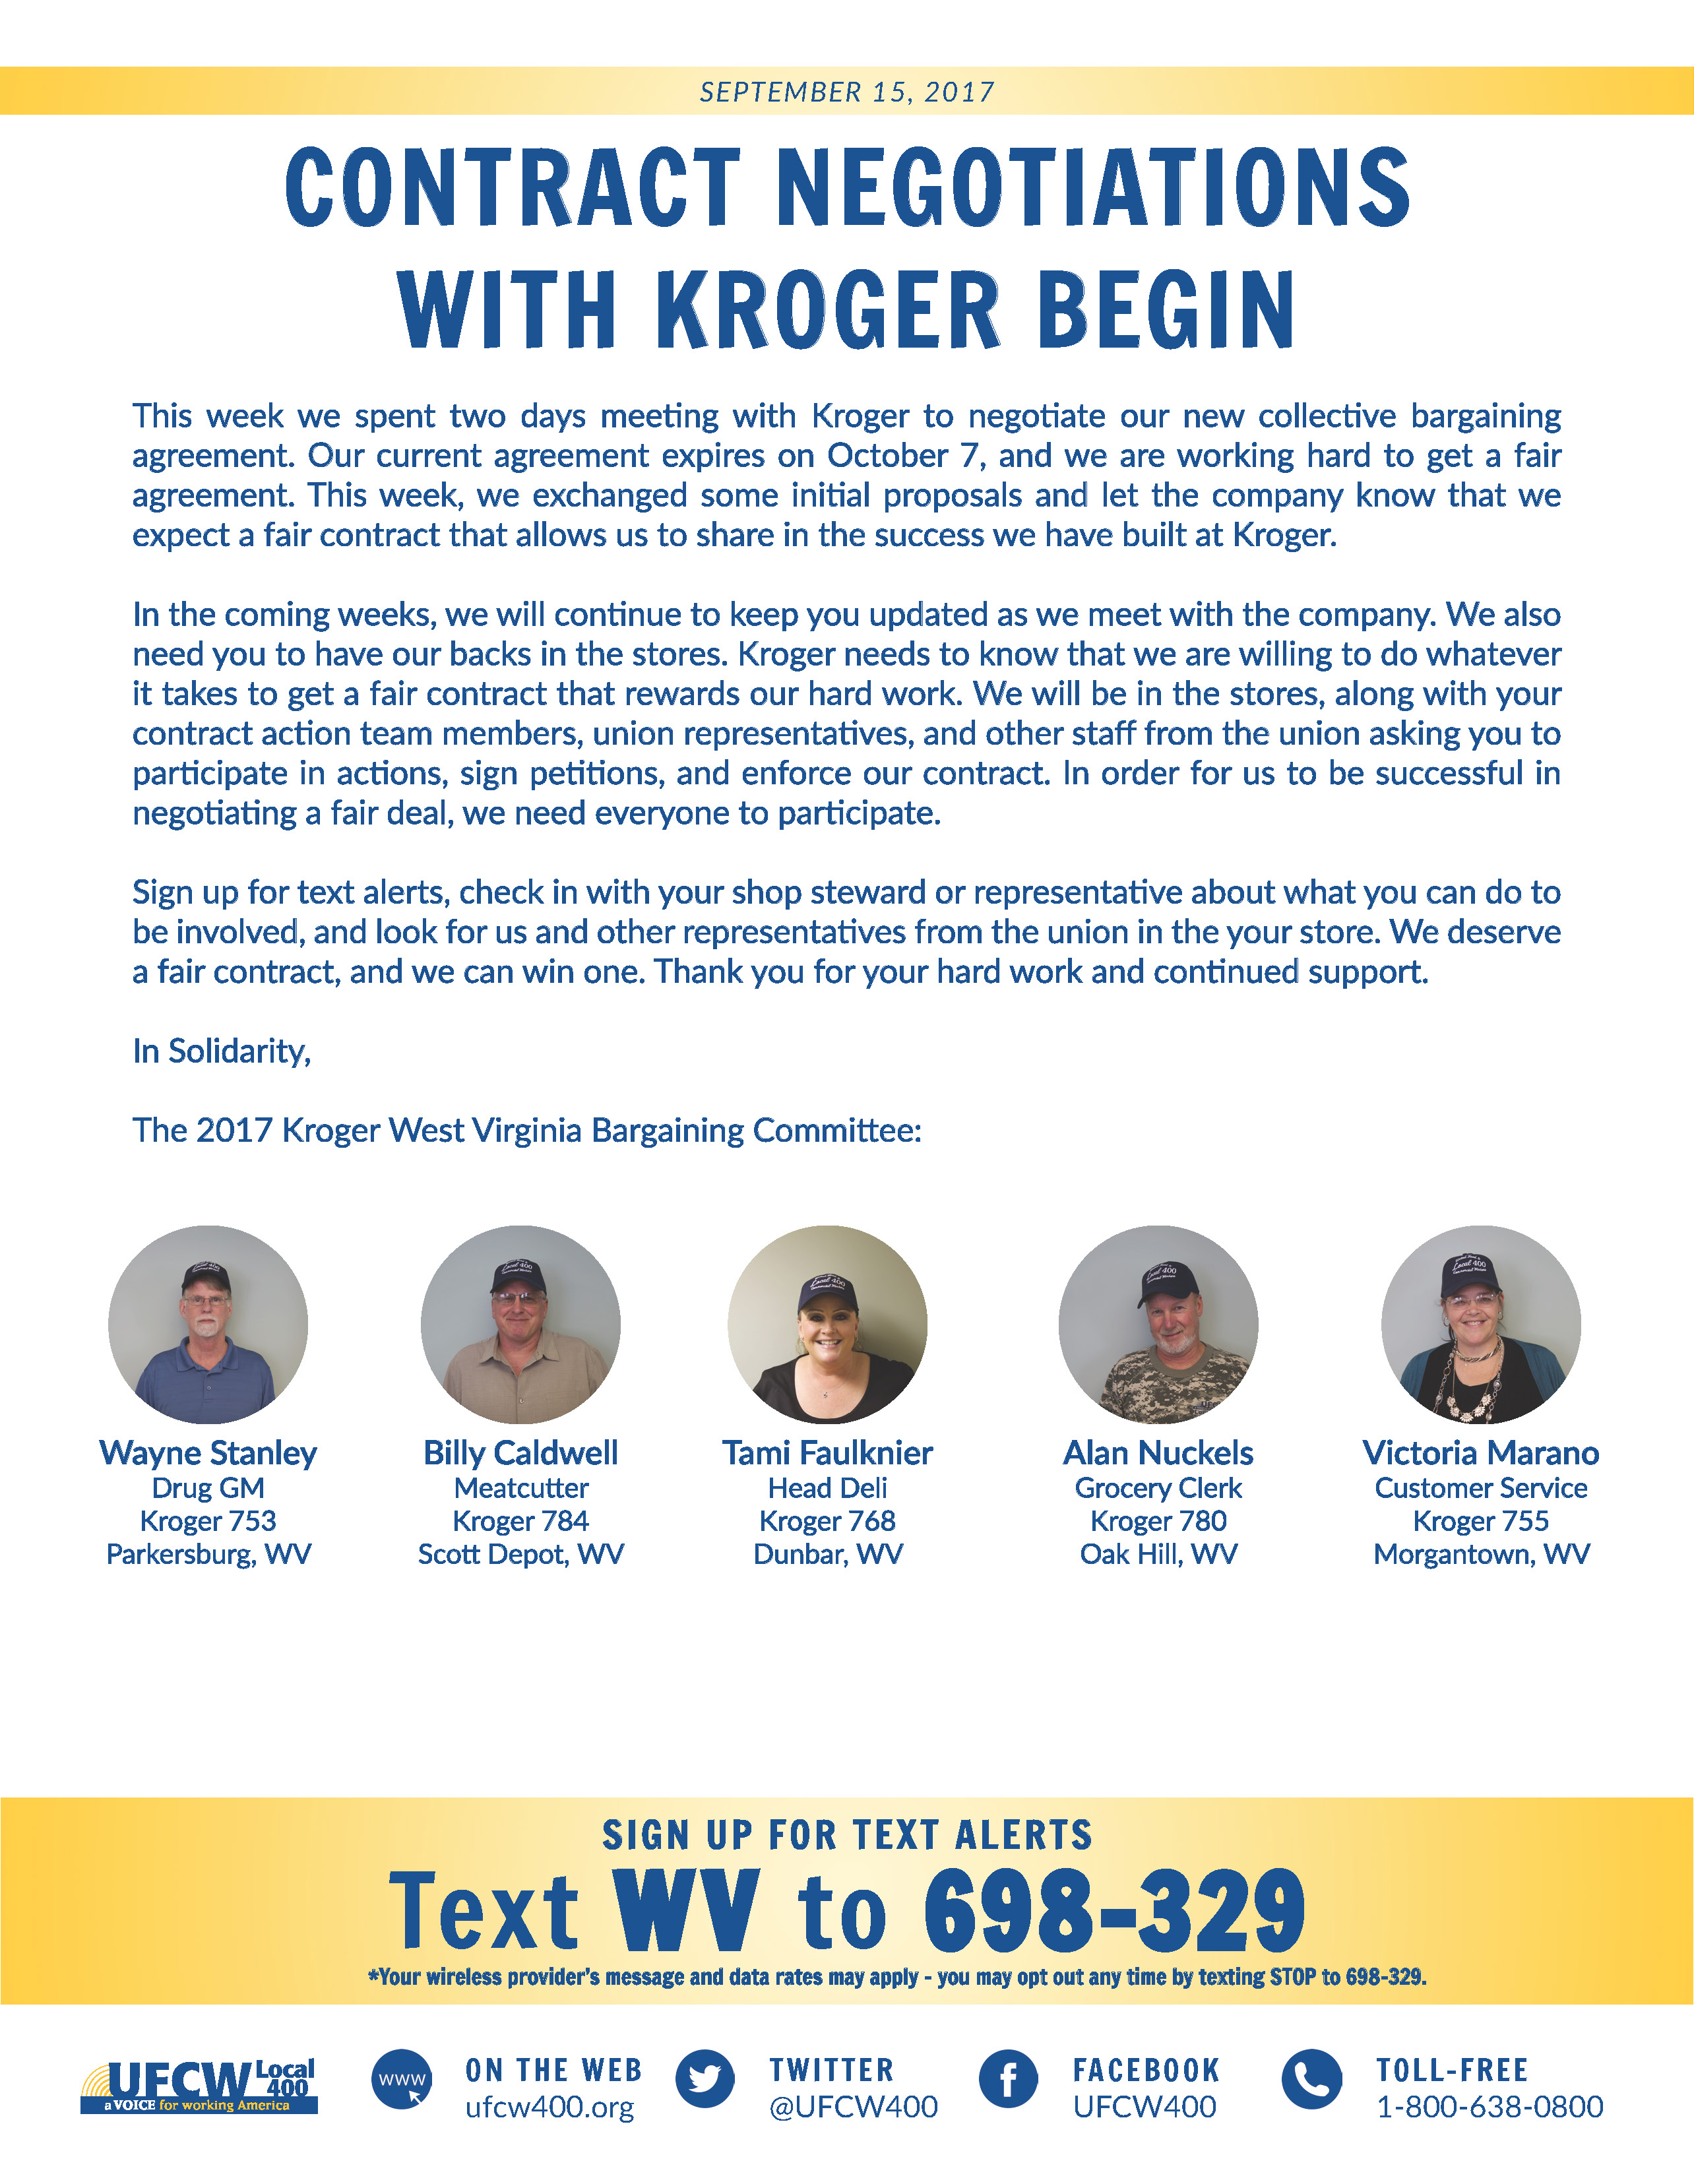 West Virginia Kroger Contract Negotiations Begin